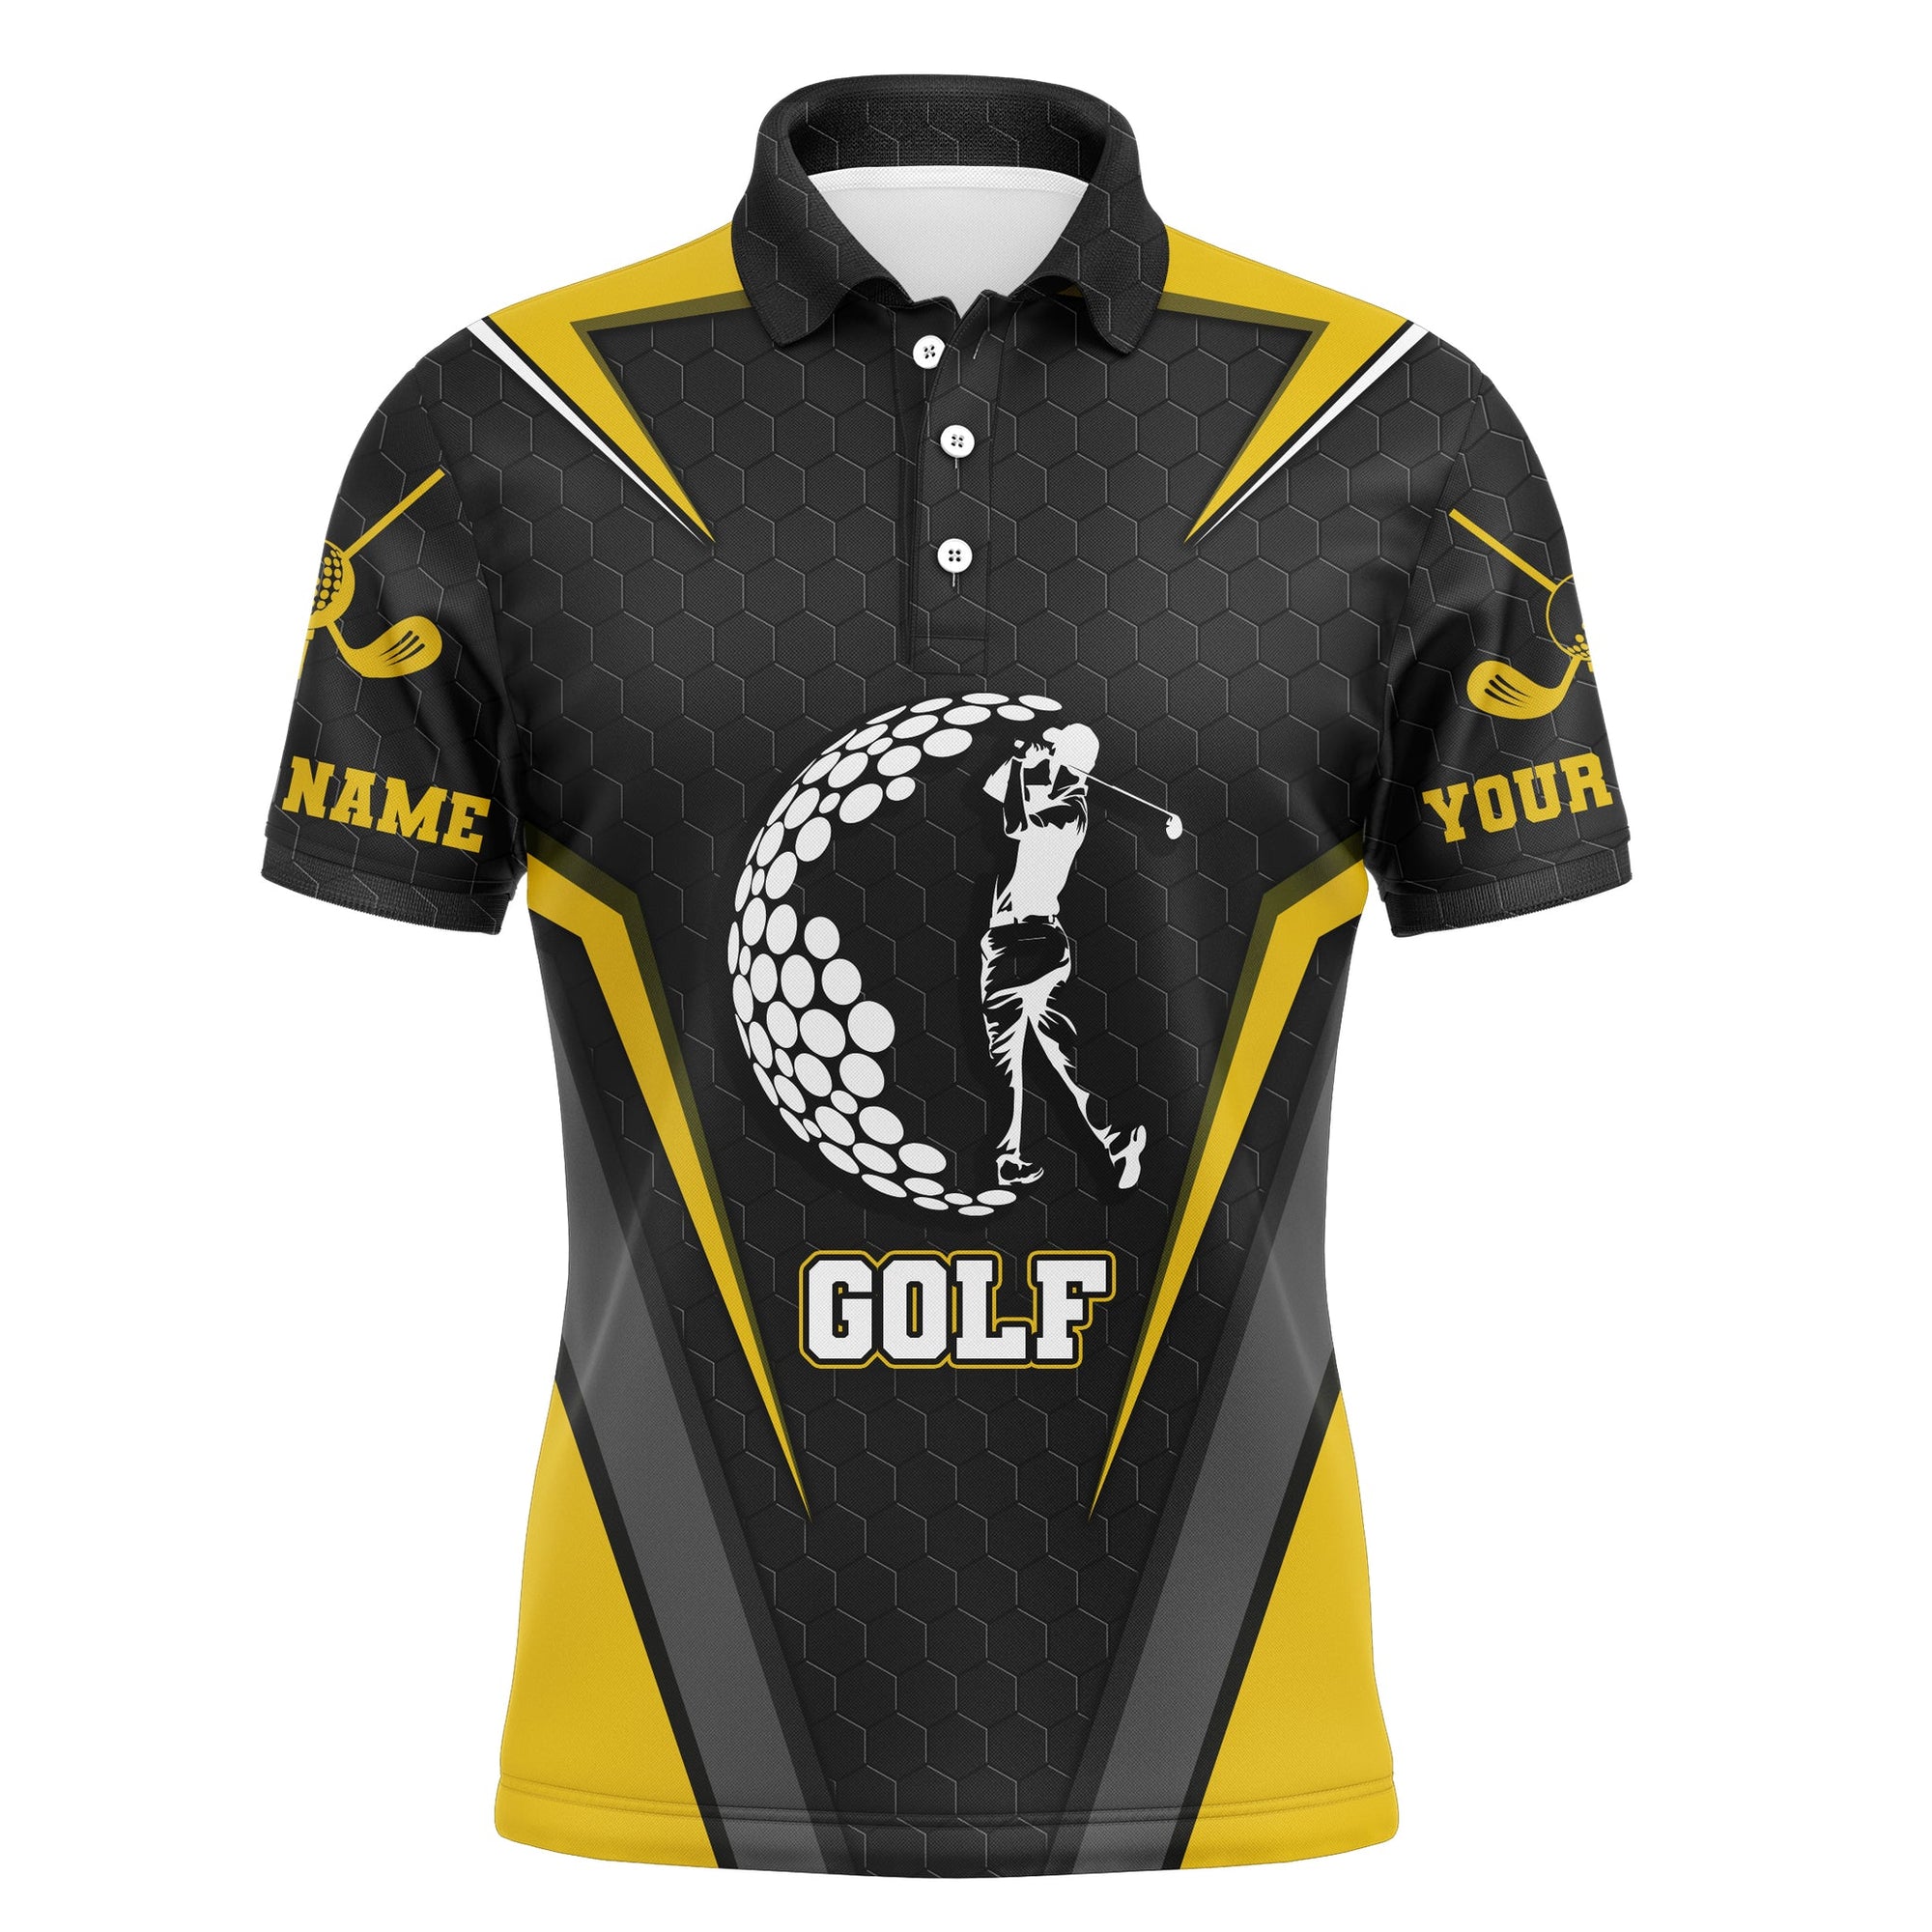 Golf Men Polo Shirt - Golfing Golf Ball Custom Name Black Yellow Apparel - Personalized Gift For Golf Lover, Team, Golfer, Best Golf Shirt For Men